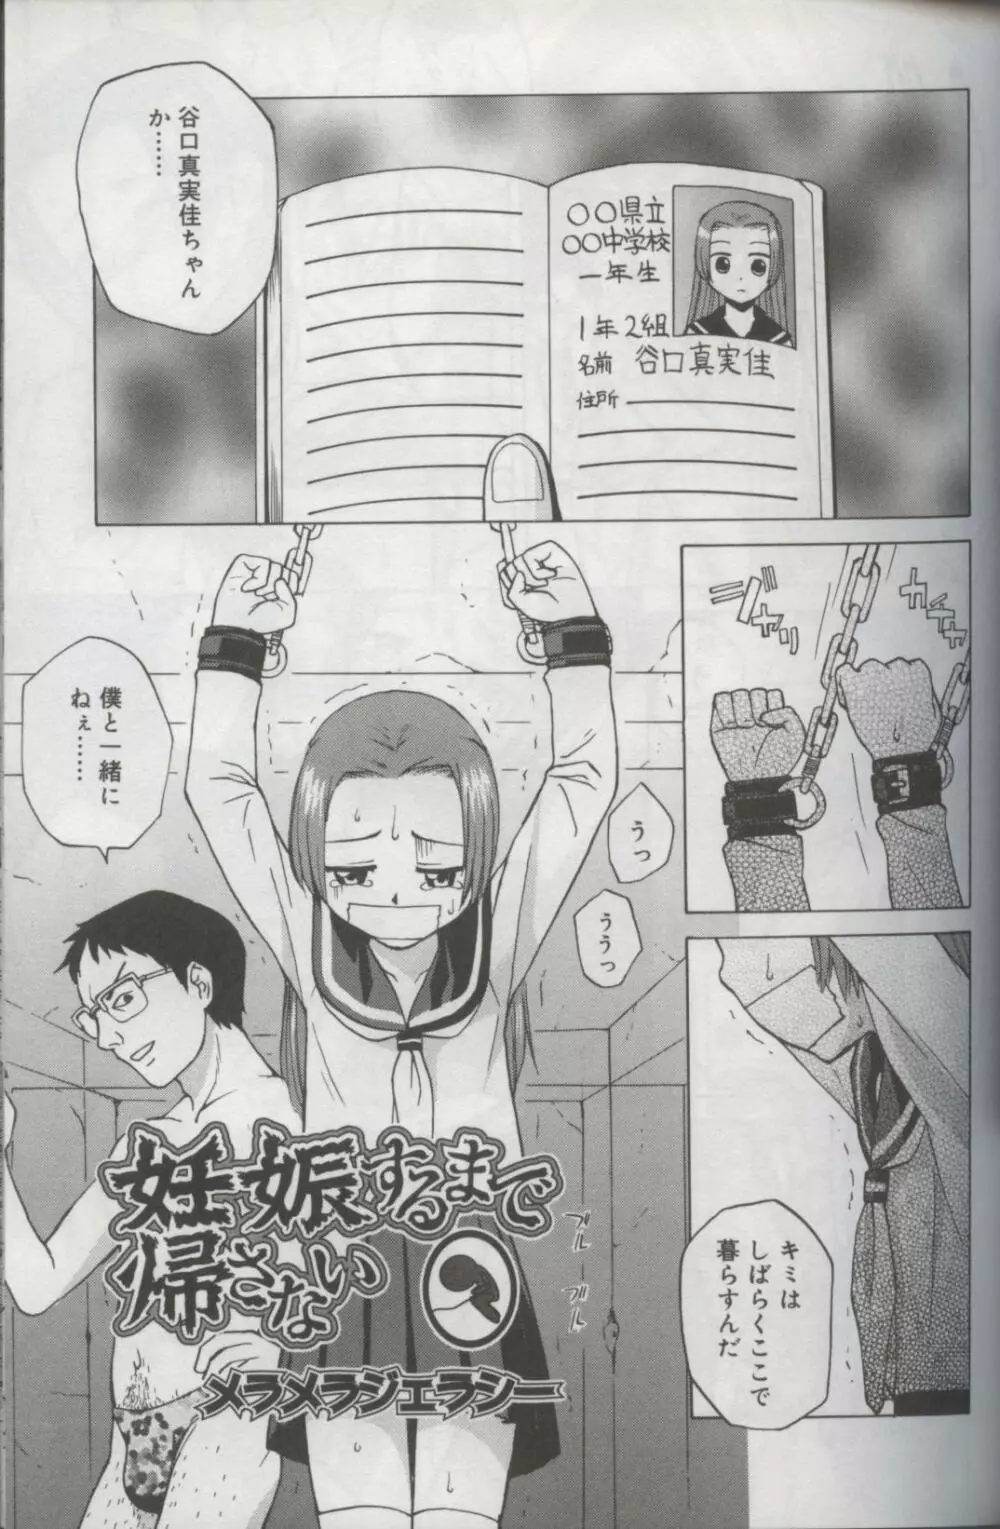 Kotori-kan Vol 3 60ページ